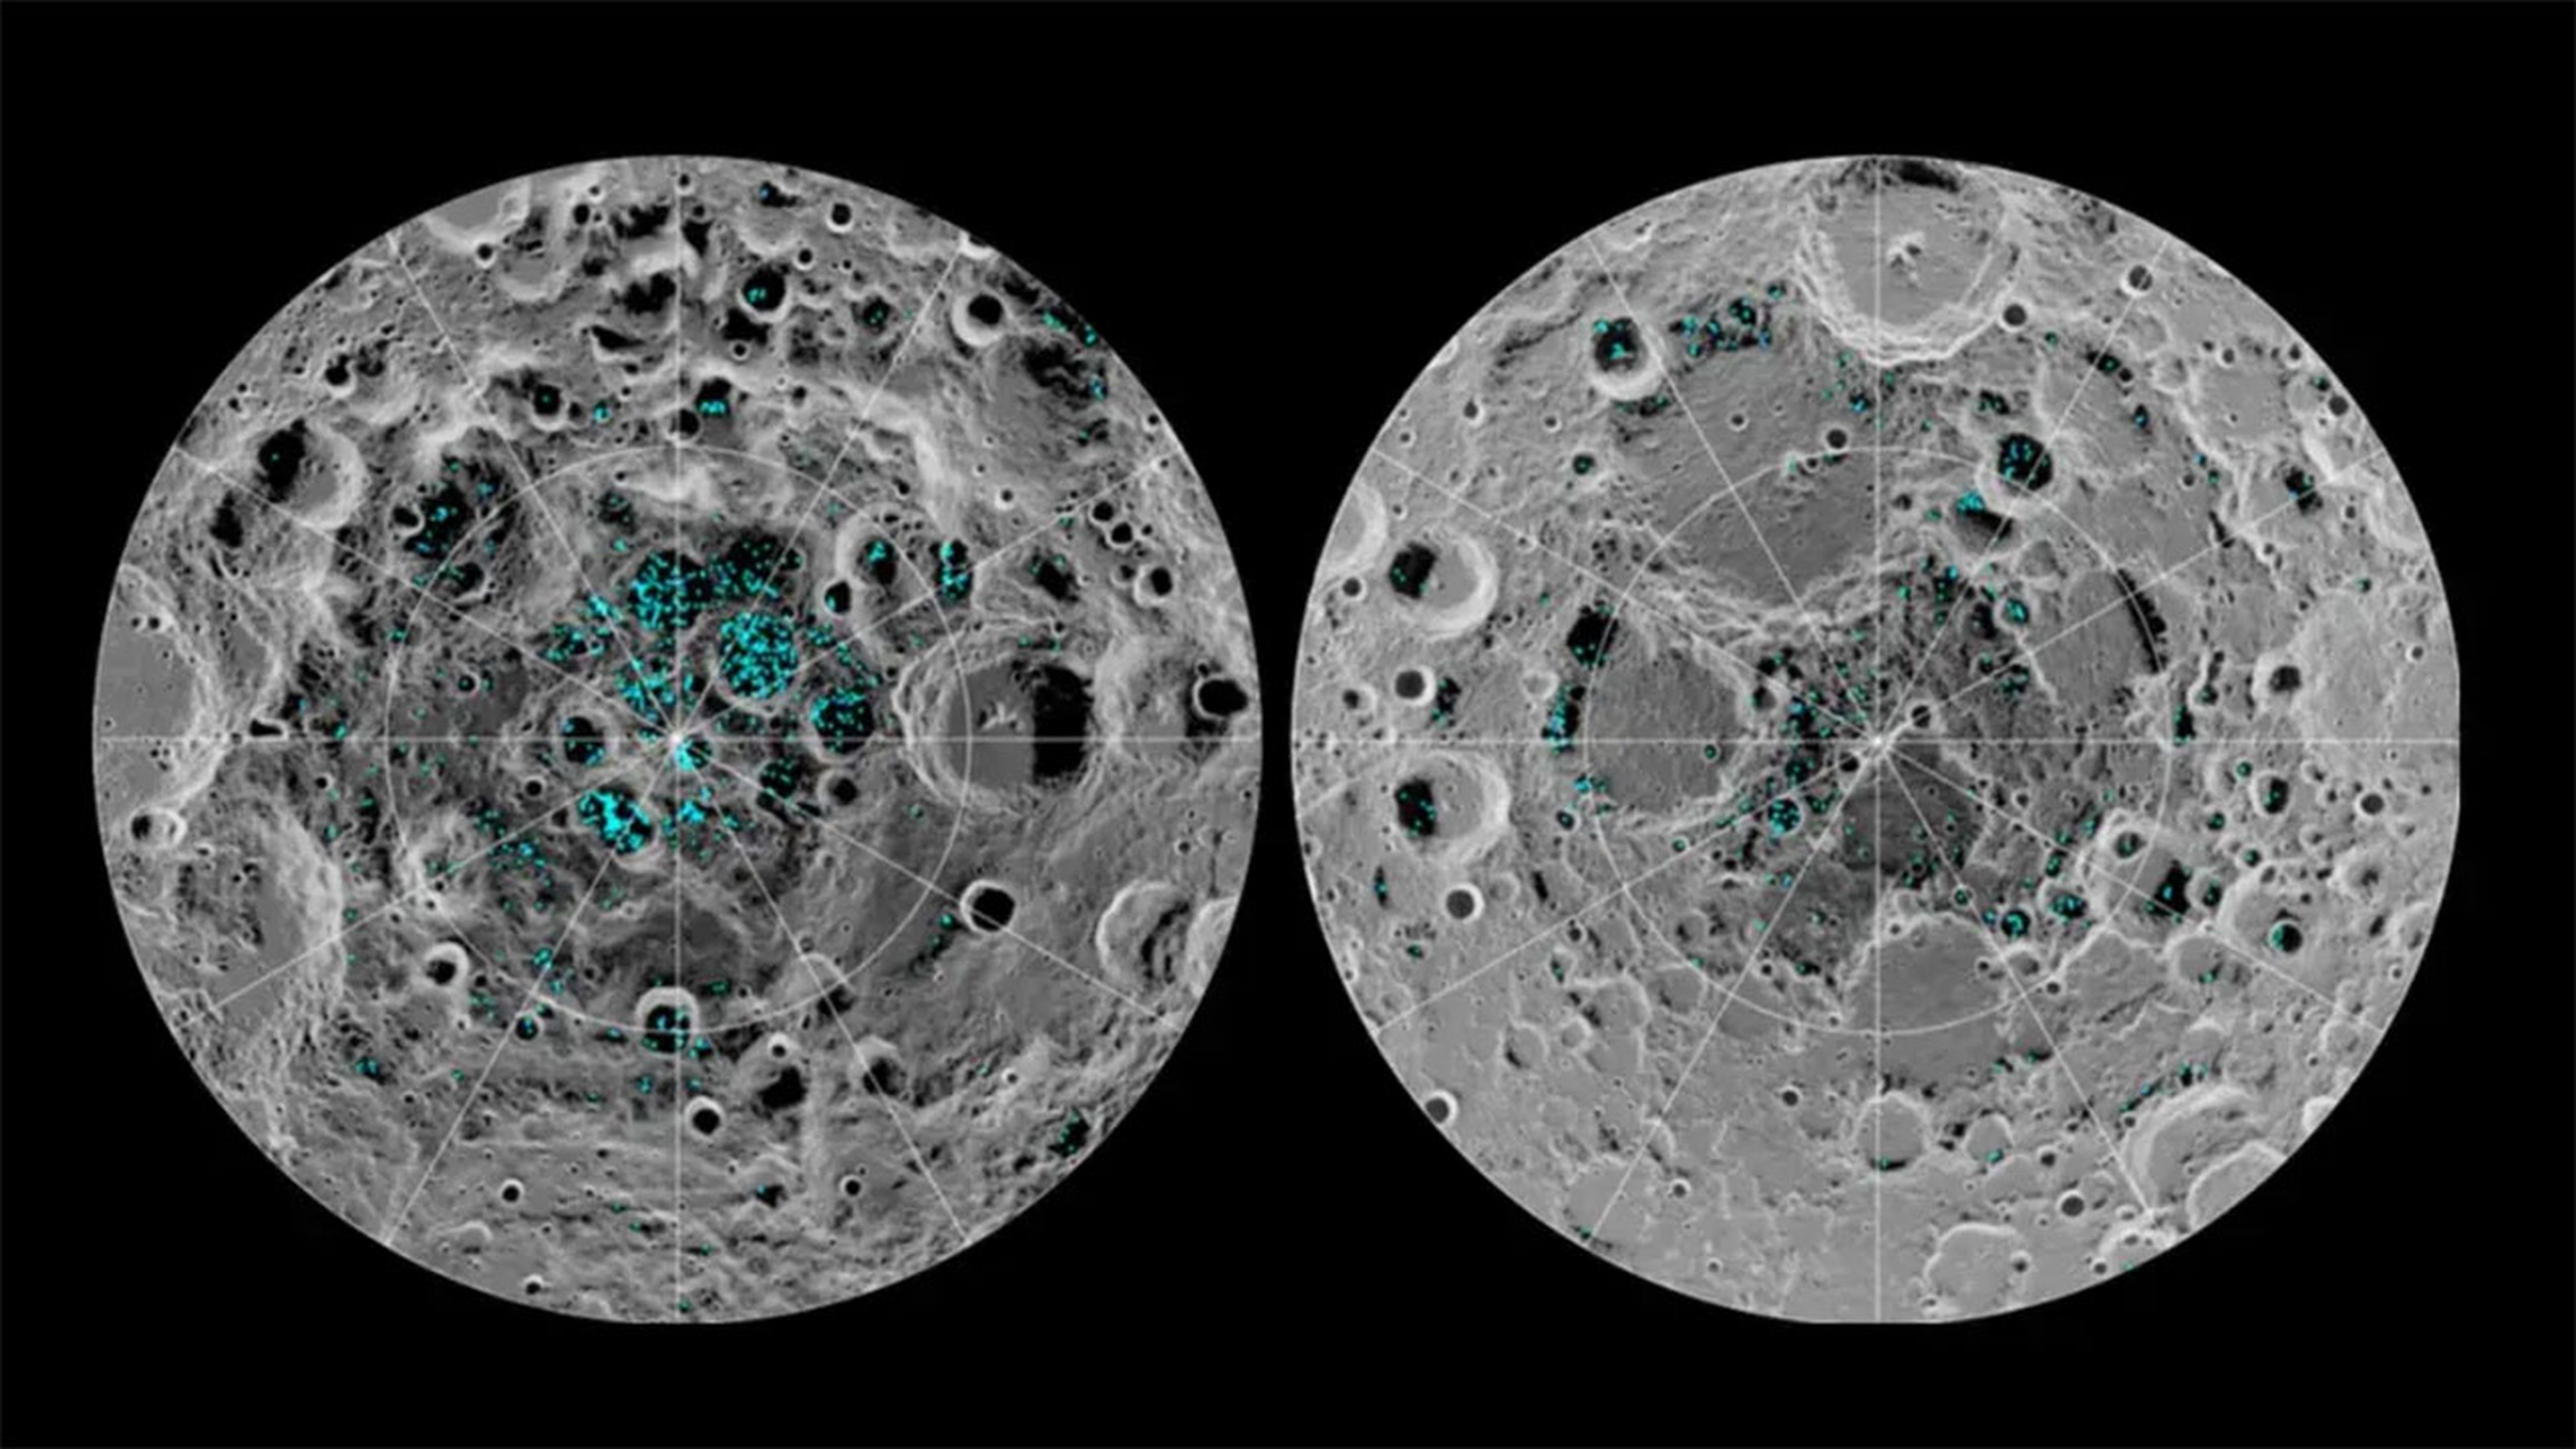 La imagen muestra la distribución del hielo superficial en el polo sur (izquierda) y el polo norte (derecha) de la Luna